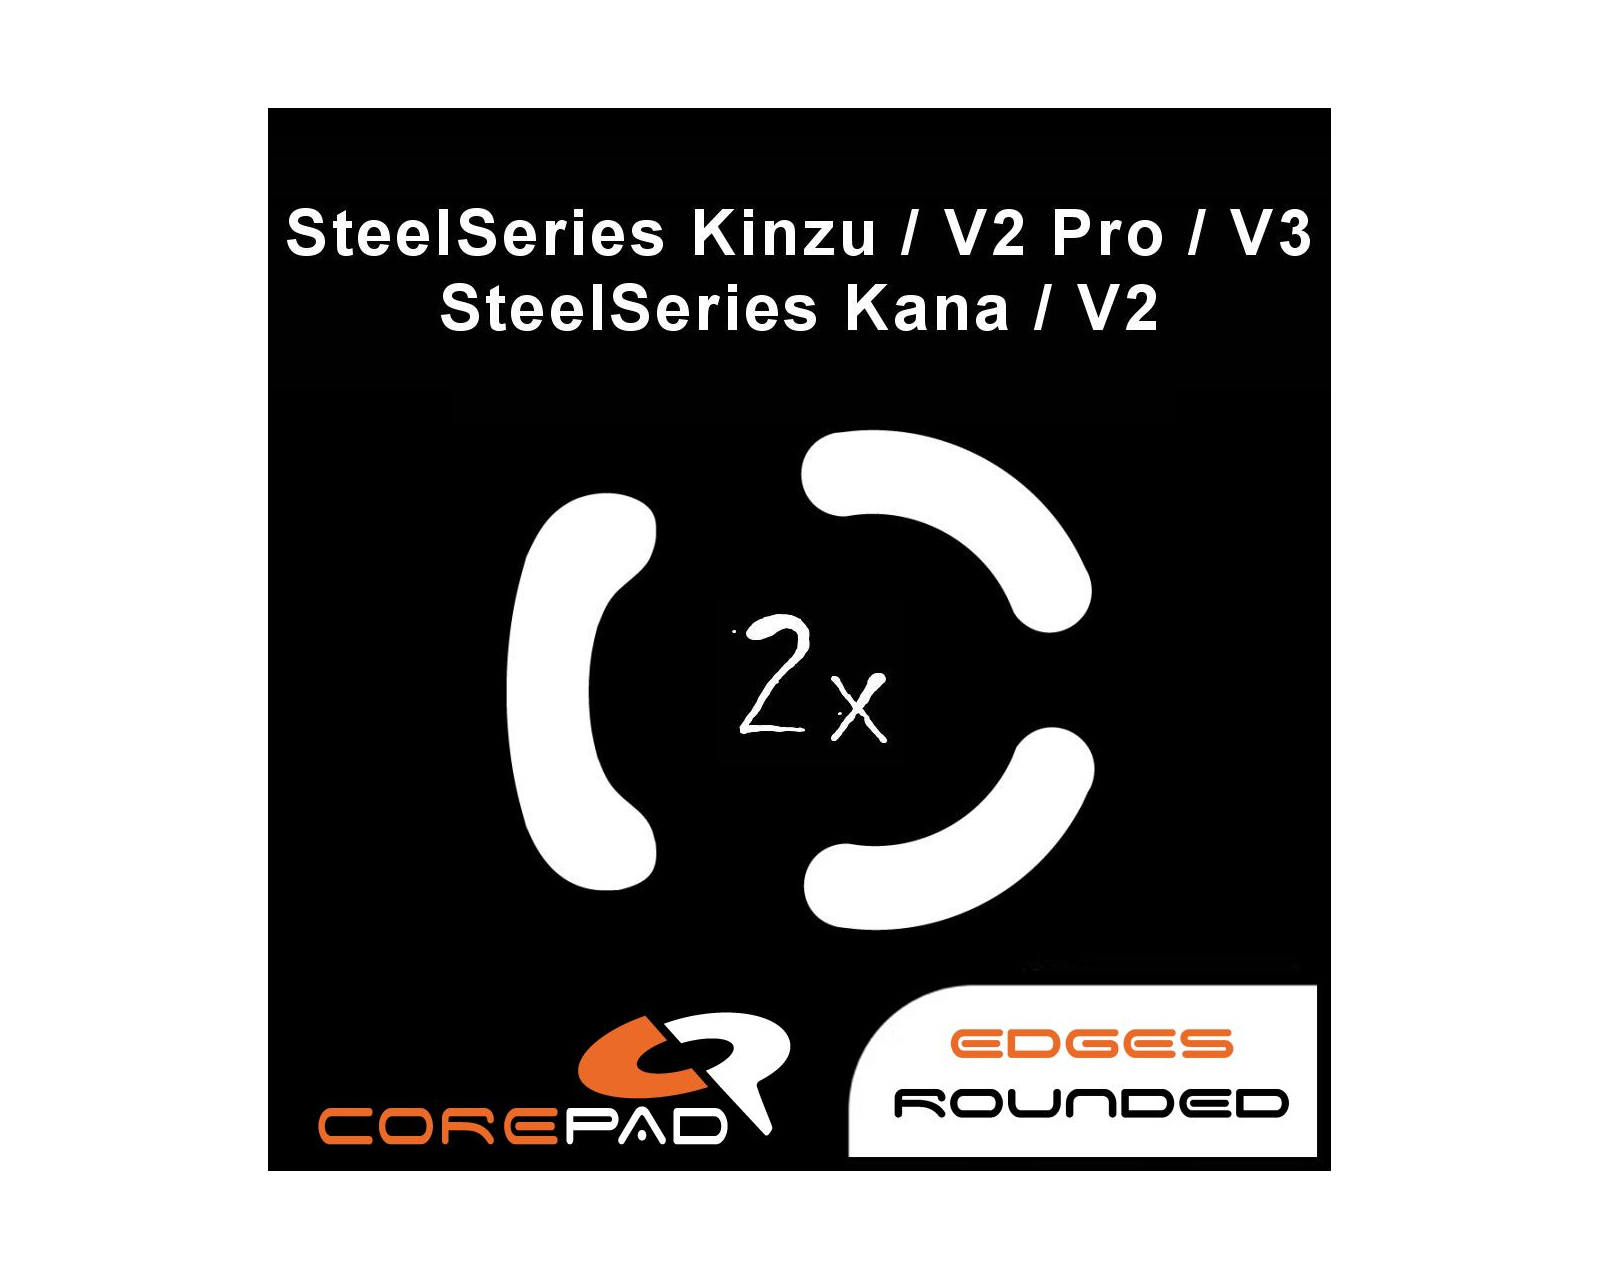 Corepad Skatez PRO for Razer Viper V2 Pro Wireless